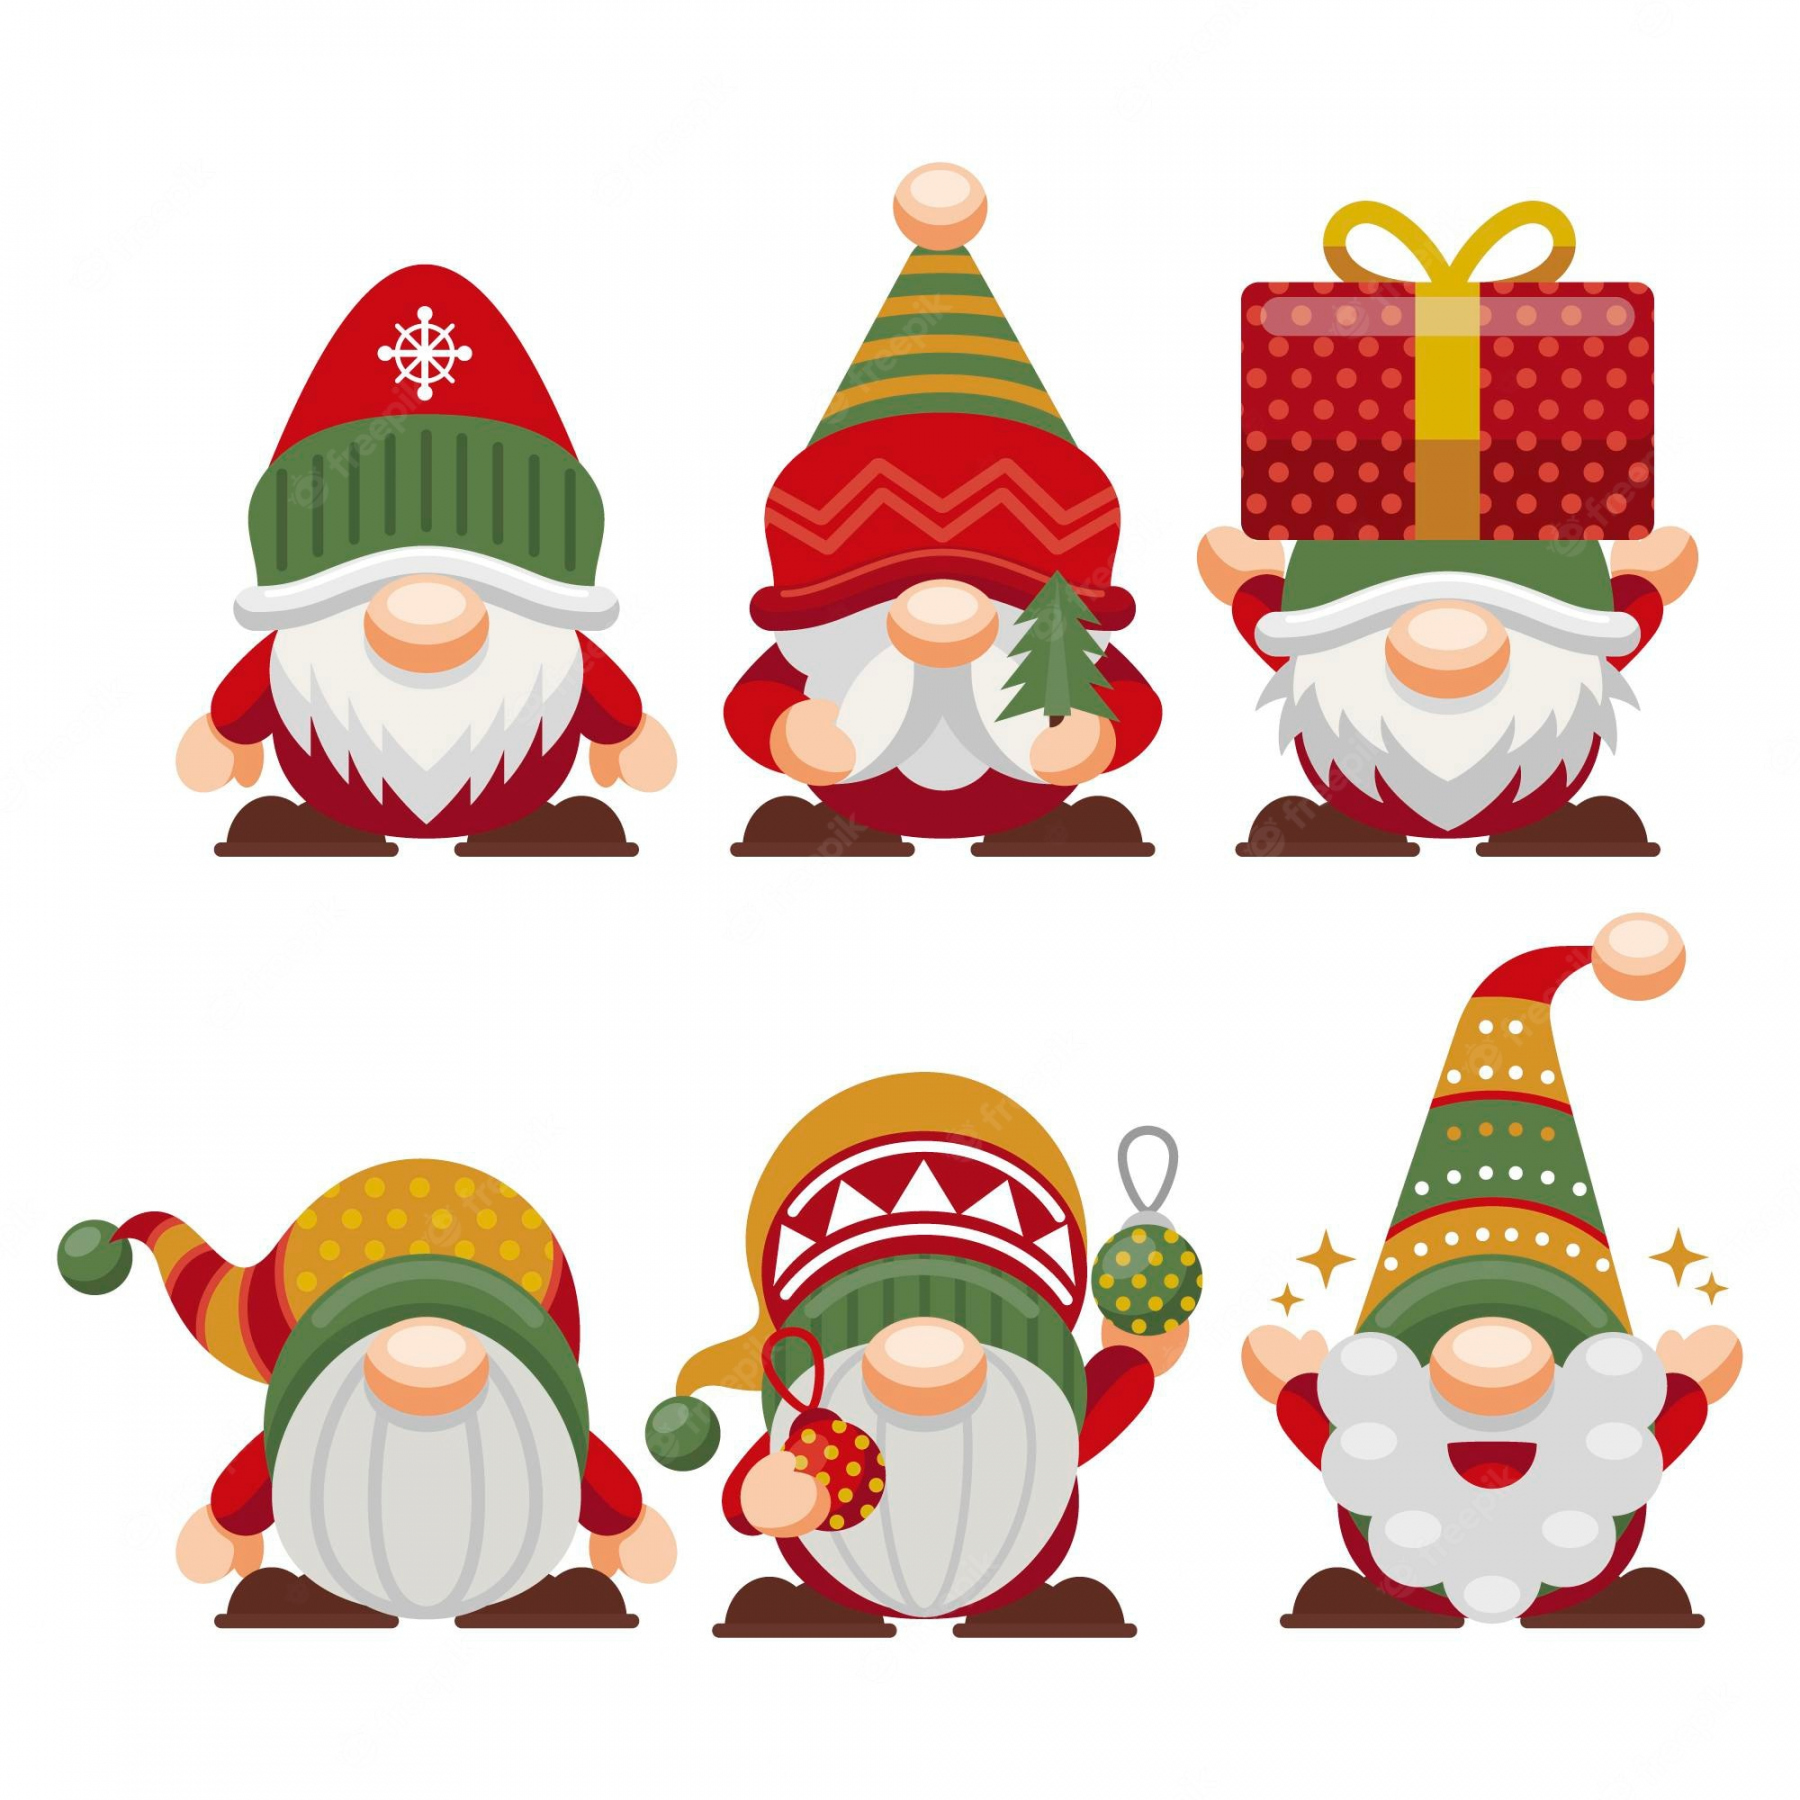 Free Printable Christmas Clip Art - Printable - Christmas Clip Art Images - Free Download on Freepik